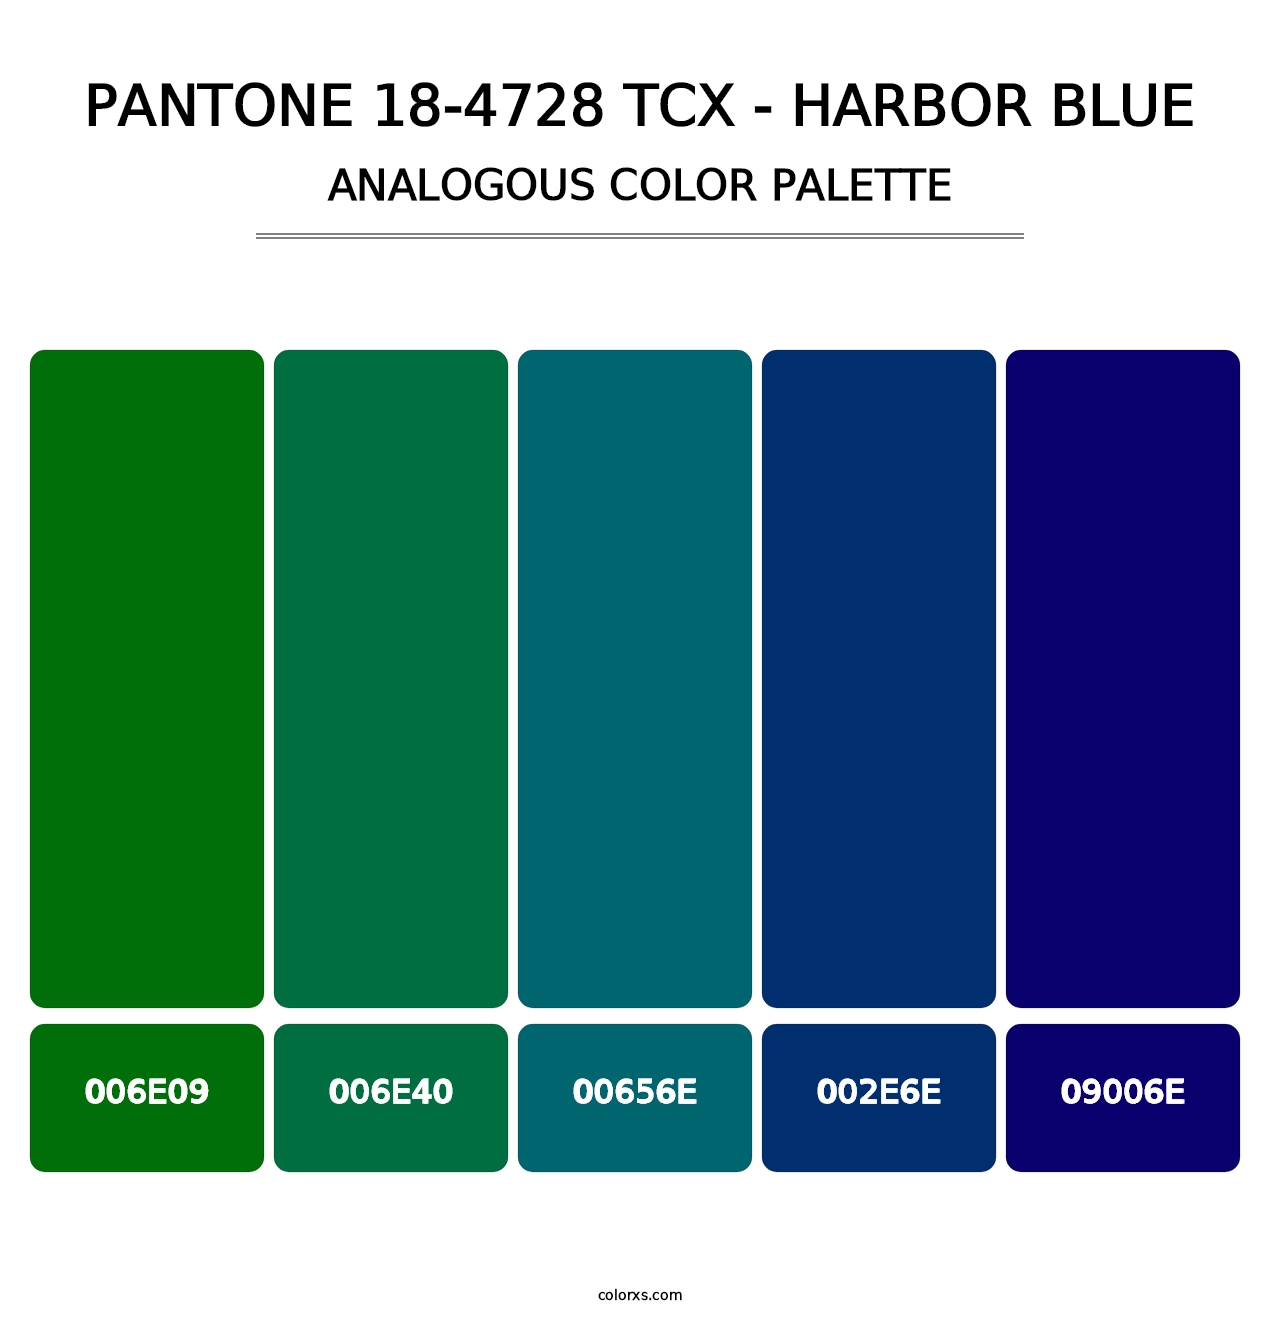 PANTONE 18-4728 TCX - Harbor Blue - Analogous Color Palette